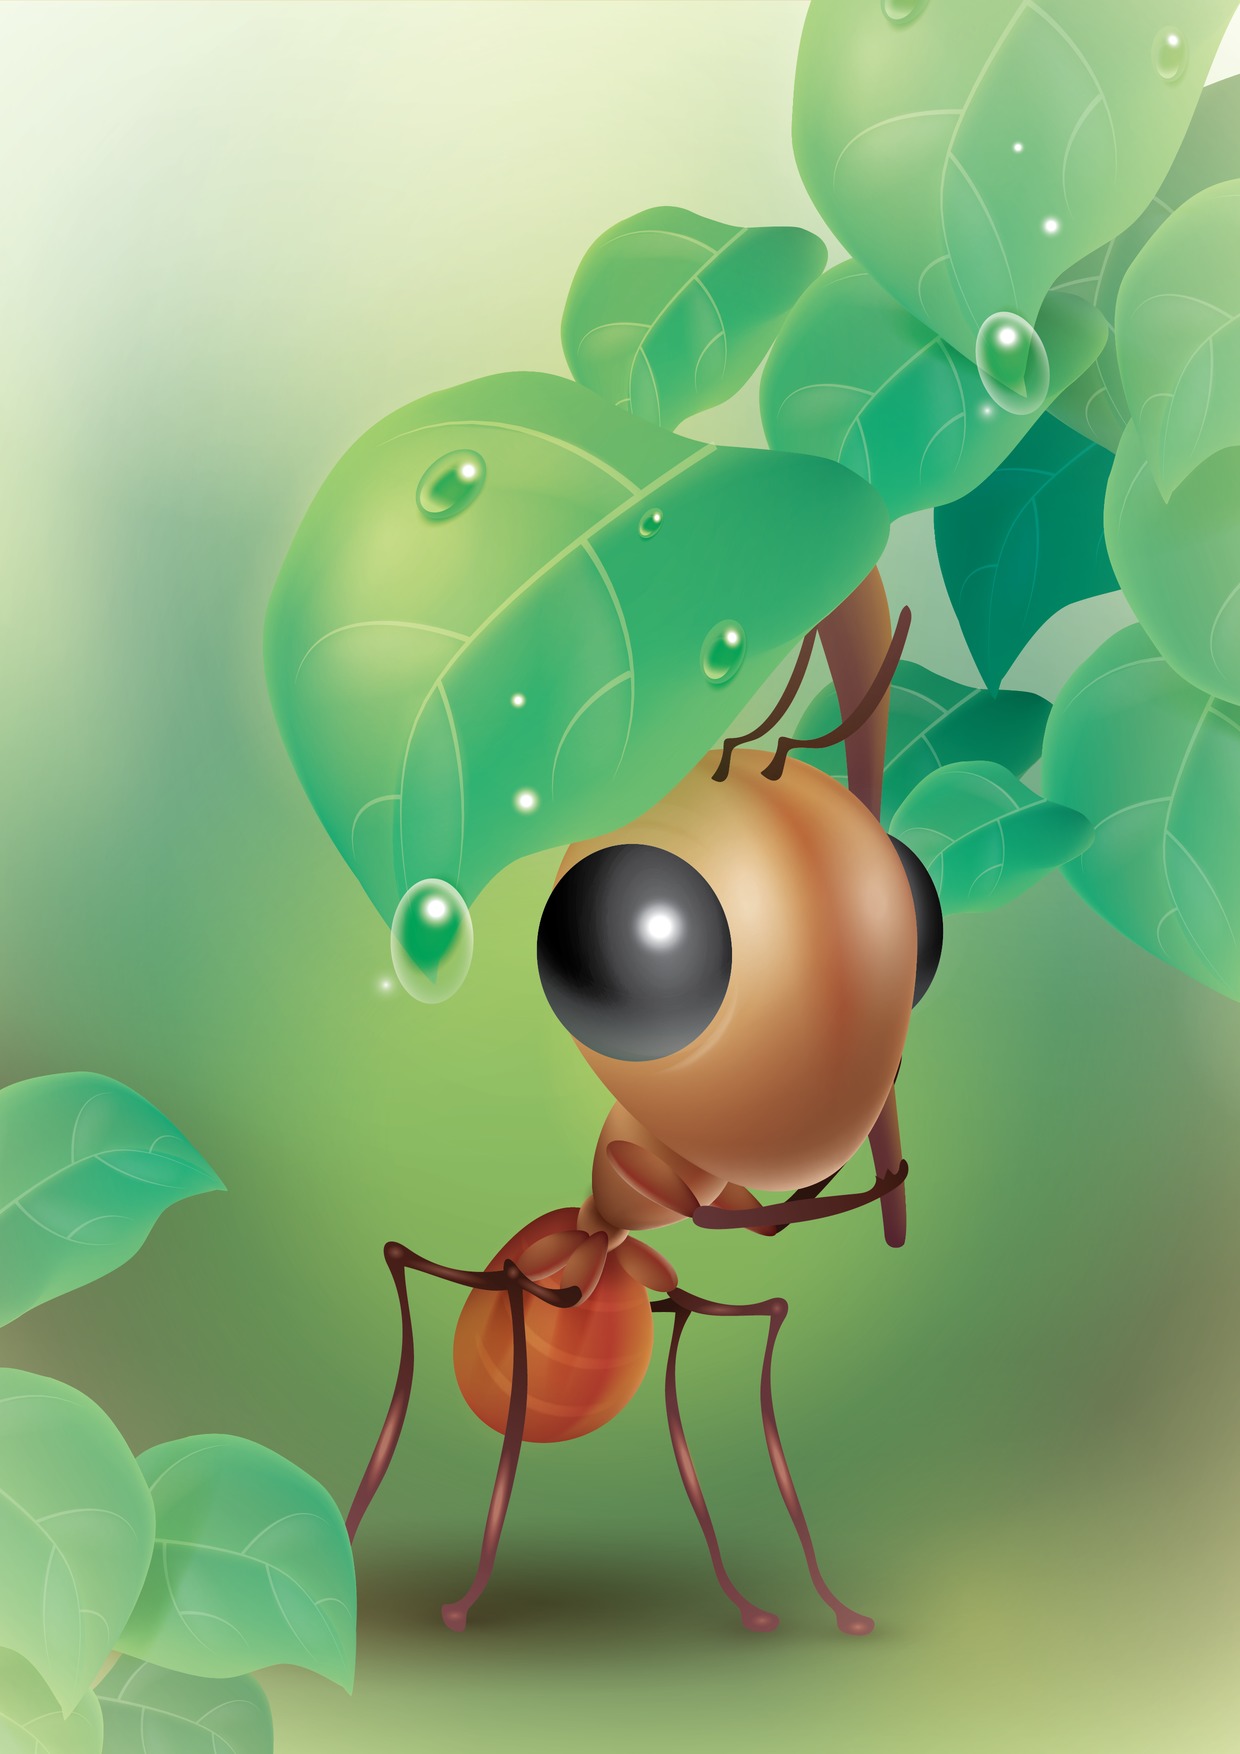 Ağustos Böceği ile Karınca